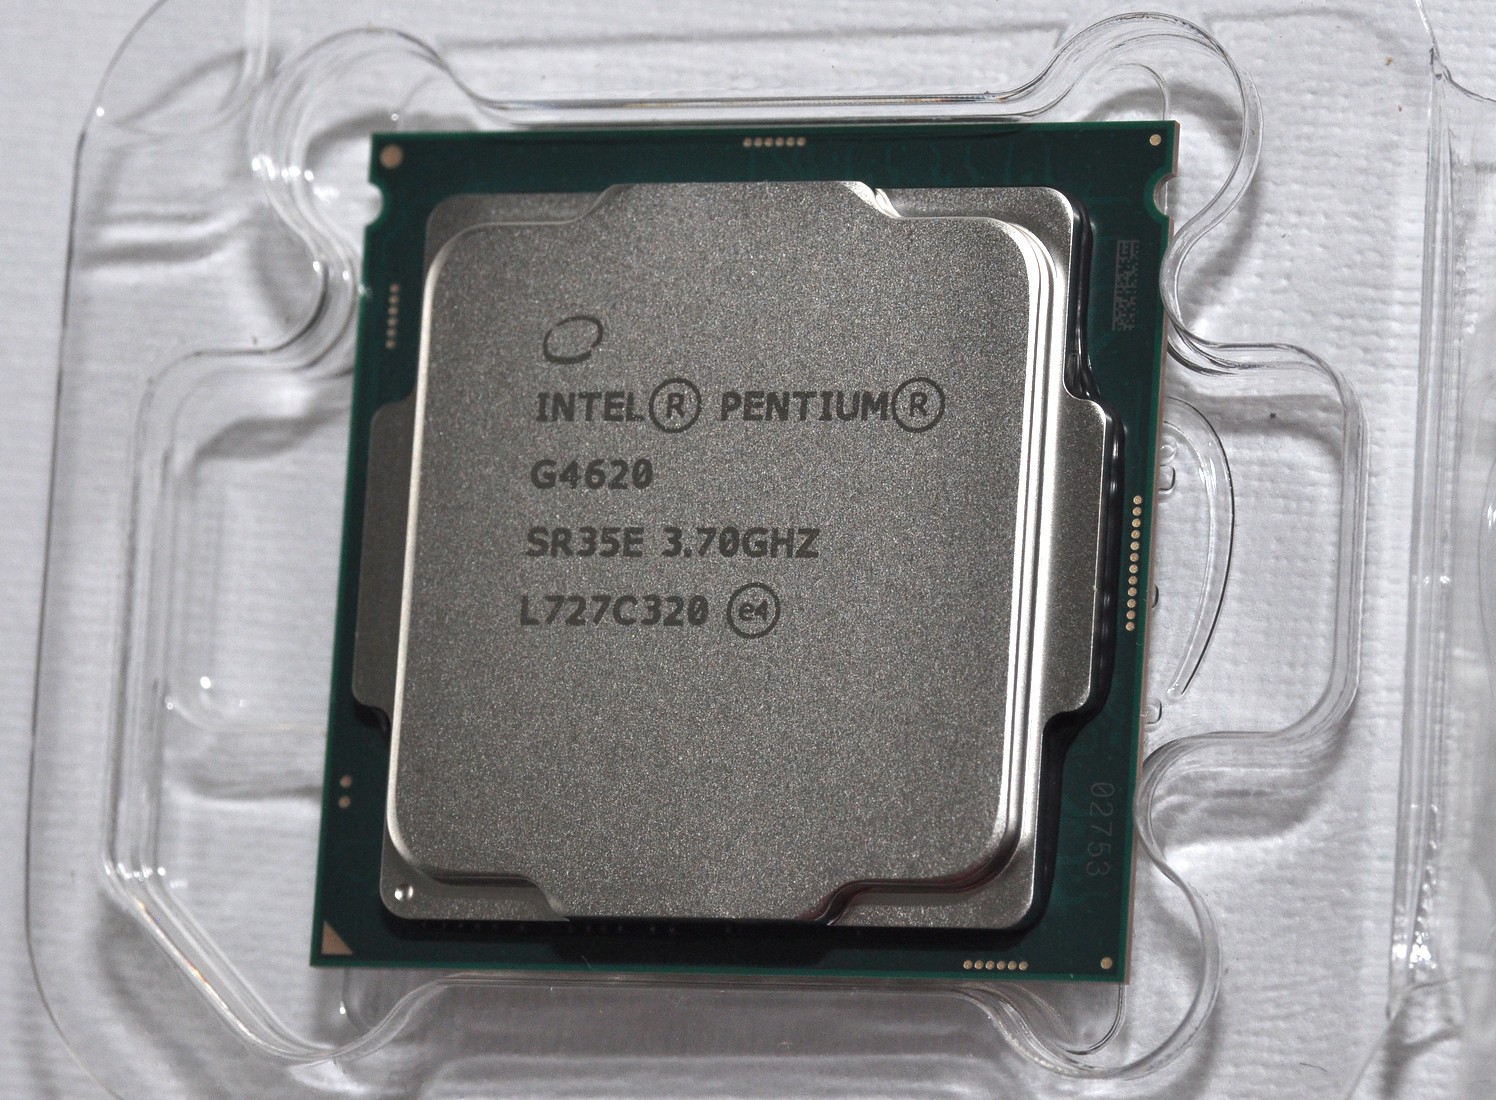 Intel g4620. Процессор Intel Pentium g4620. Intel Pentium g4620 lga1151, 2 x 3700 МГЦ. Intel Pentium 4620. Intel r Pentium r CPU g4620 3.70GHZ.